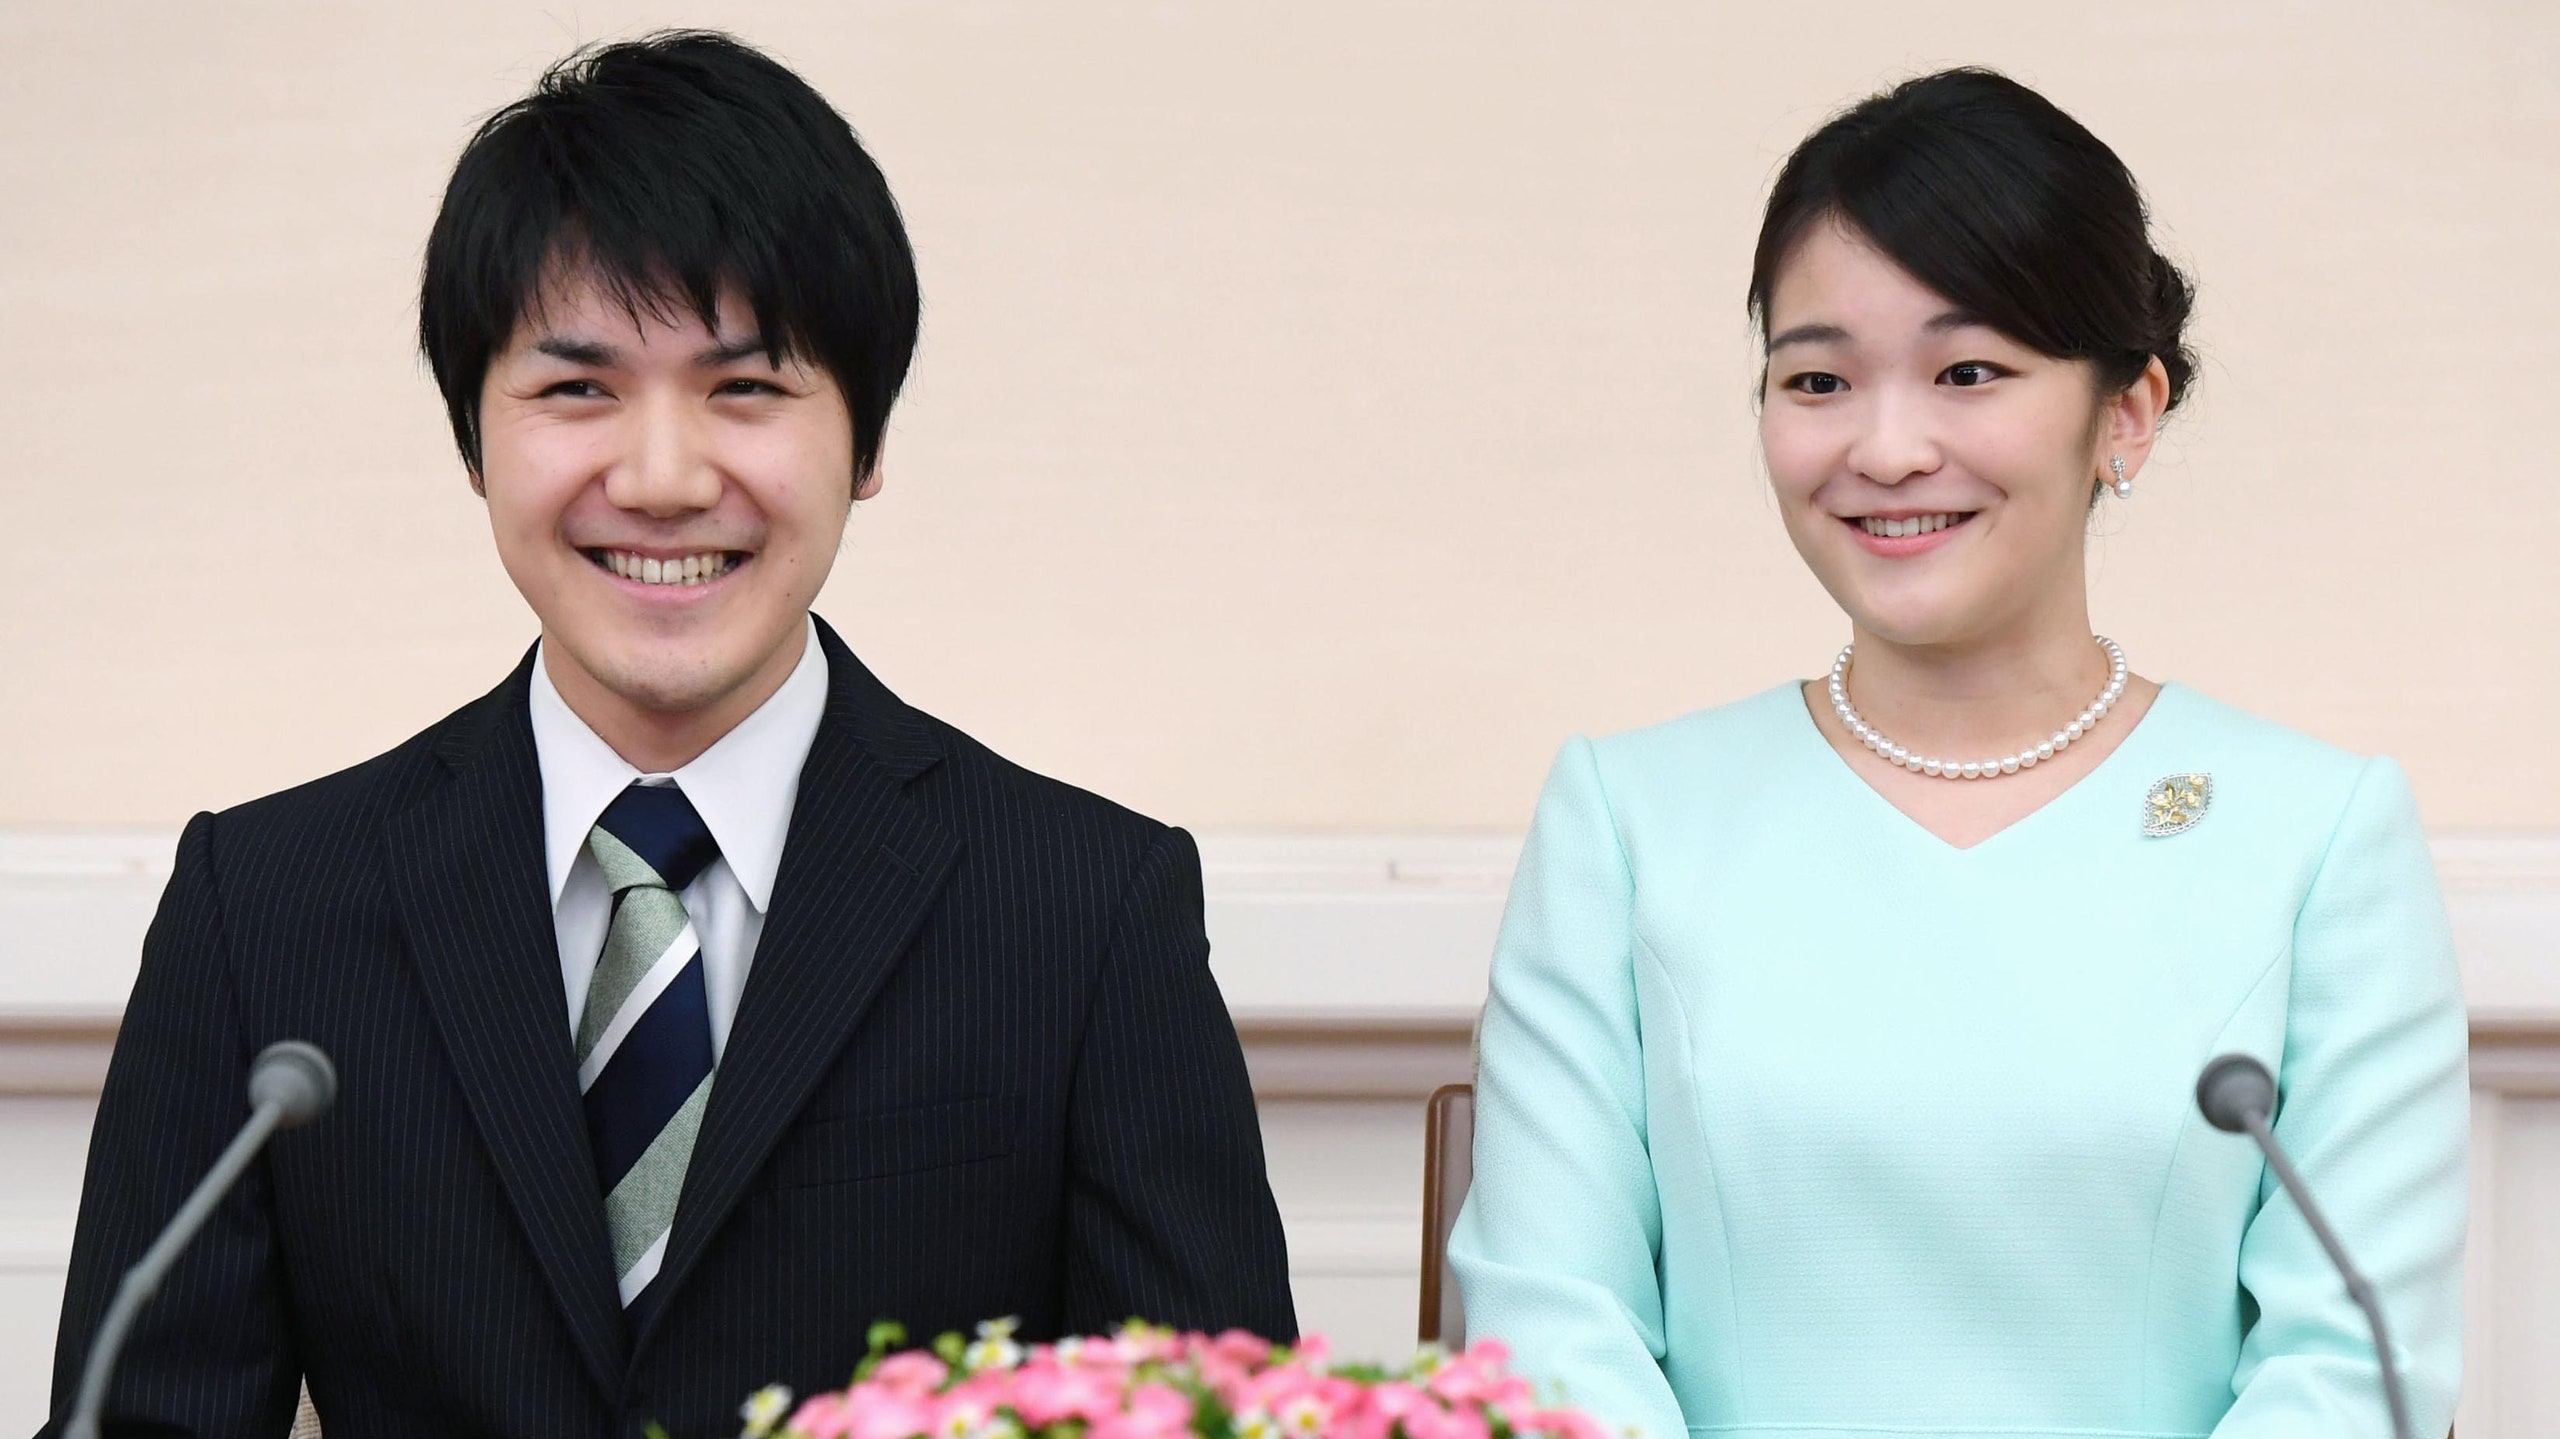 Японская принцесса выходит замуж за простолюдина. Ради него она откажется от титула и 13 млн